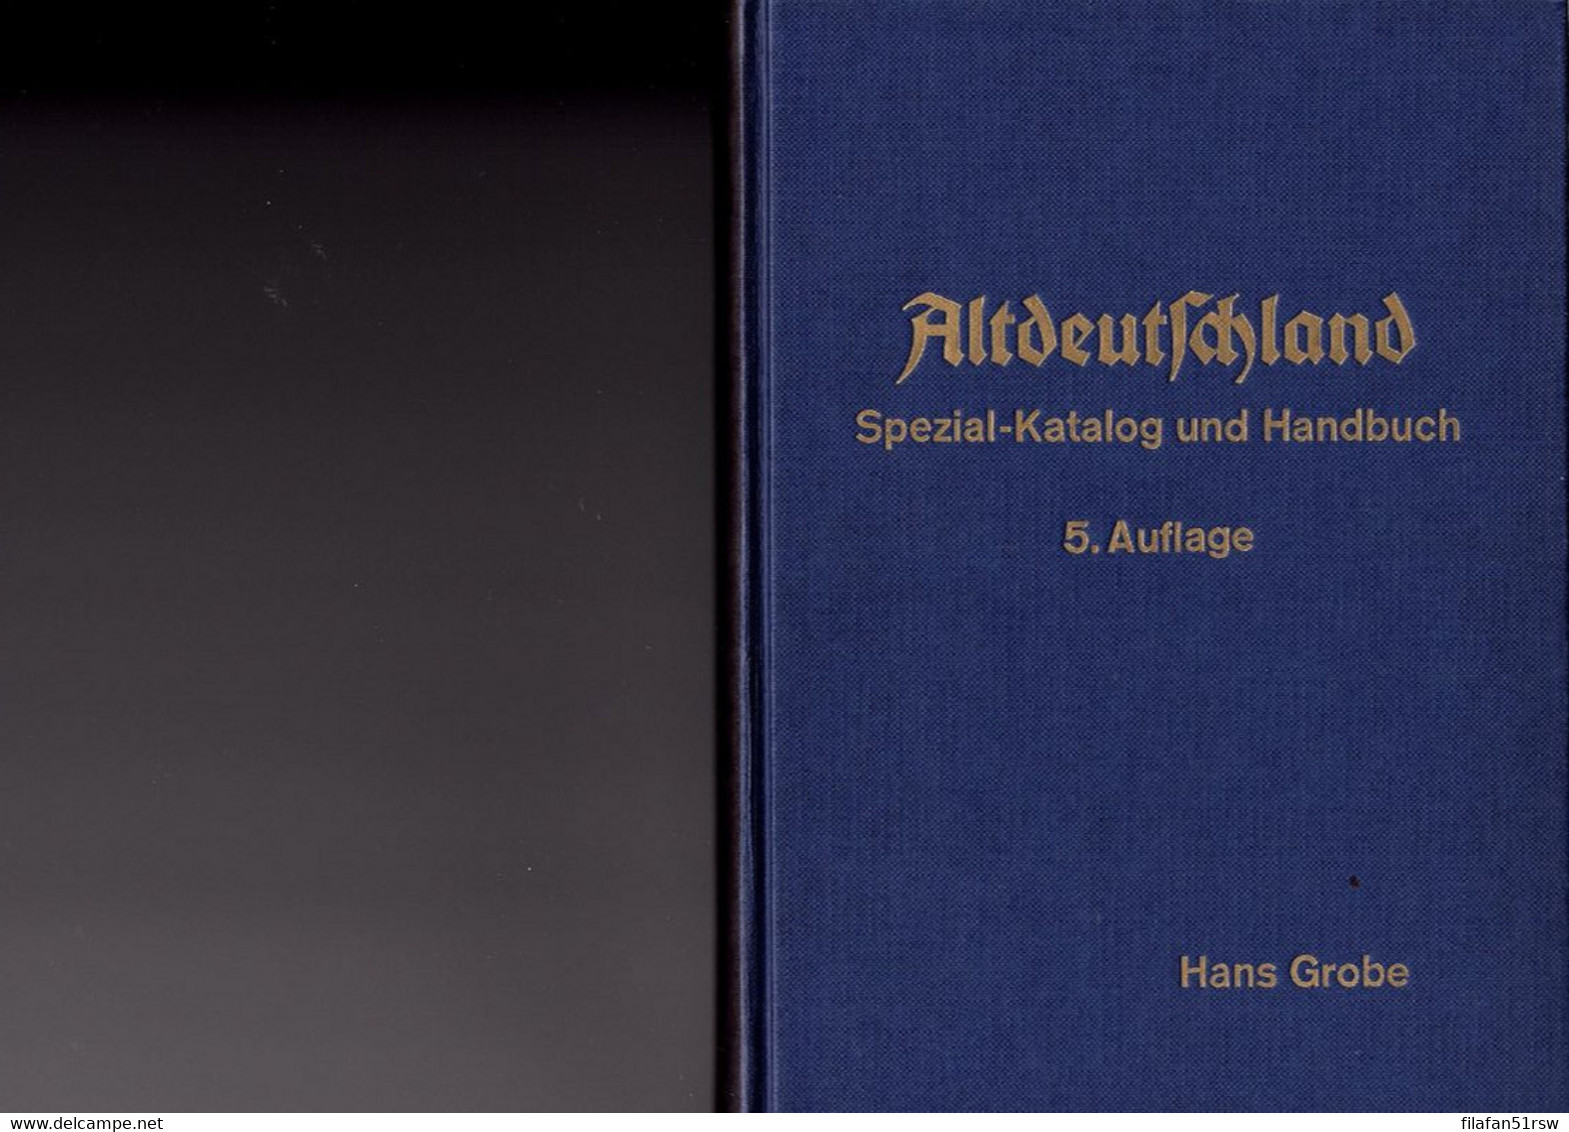 Grobe Altdeutschland Spezial-Katalog Und Handbuch 5. Auflage, Hans Grobe Und Theodor Oppermann Hannover - Handbücher